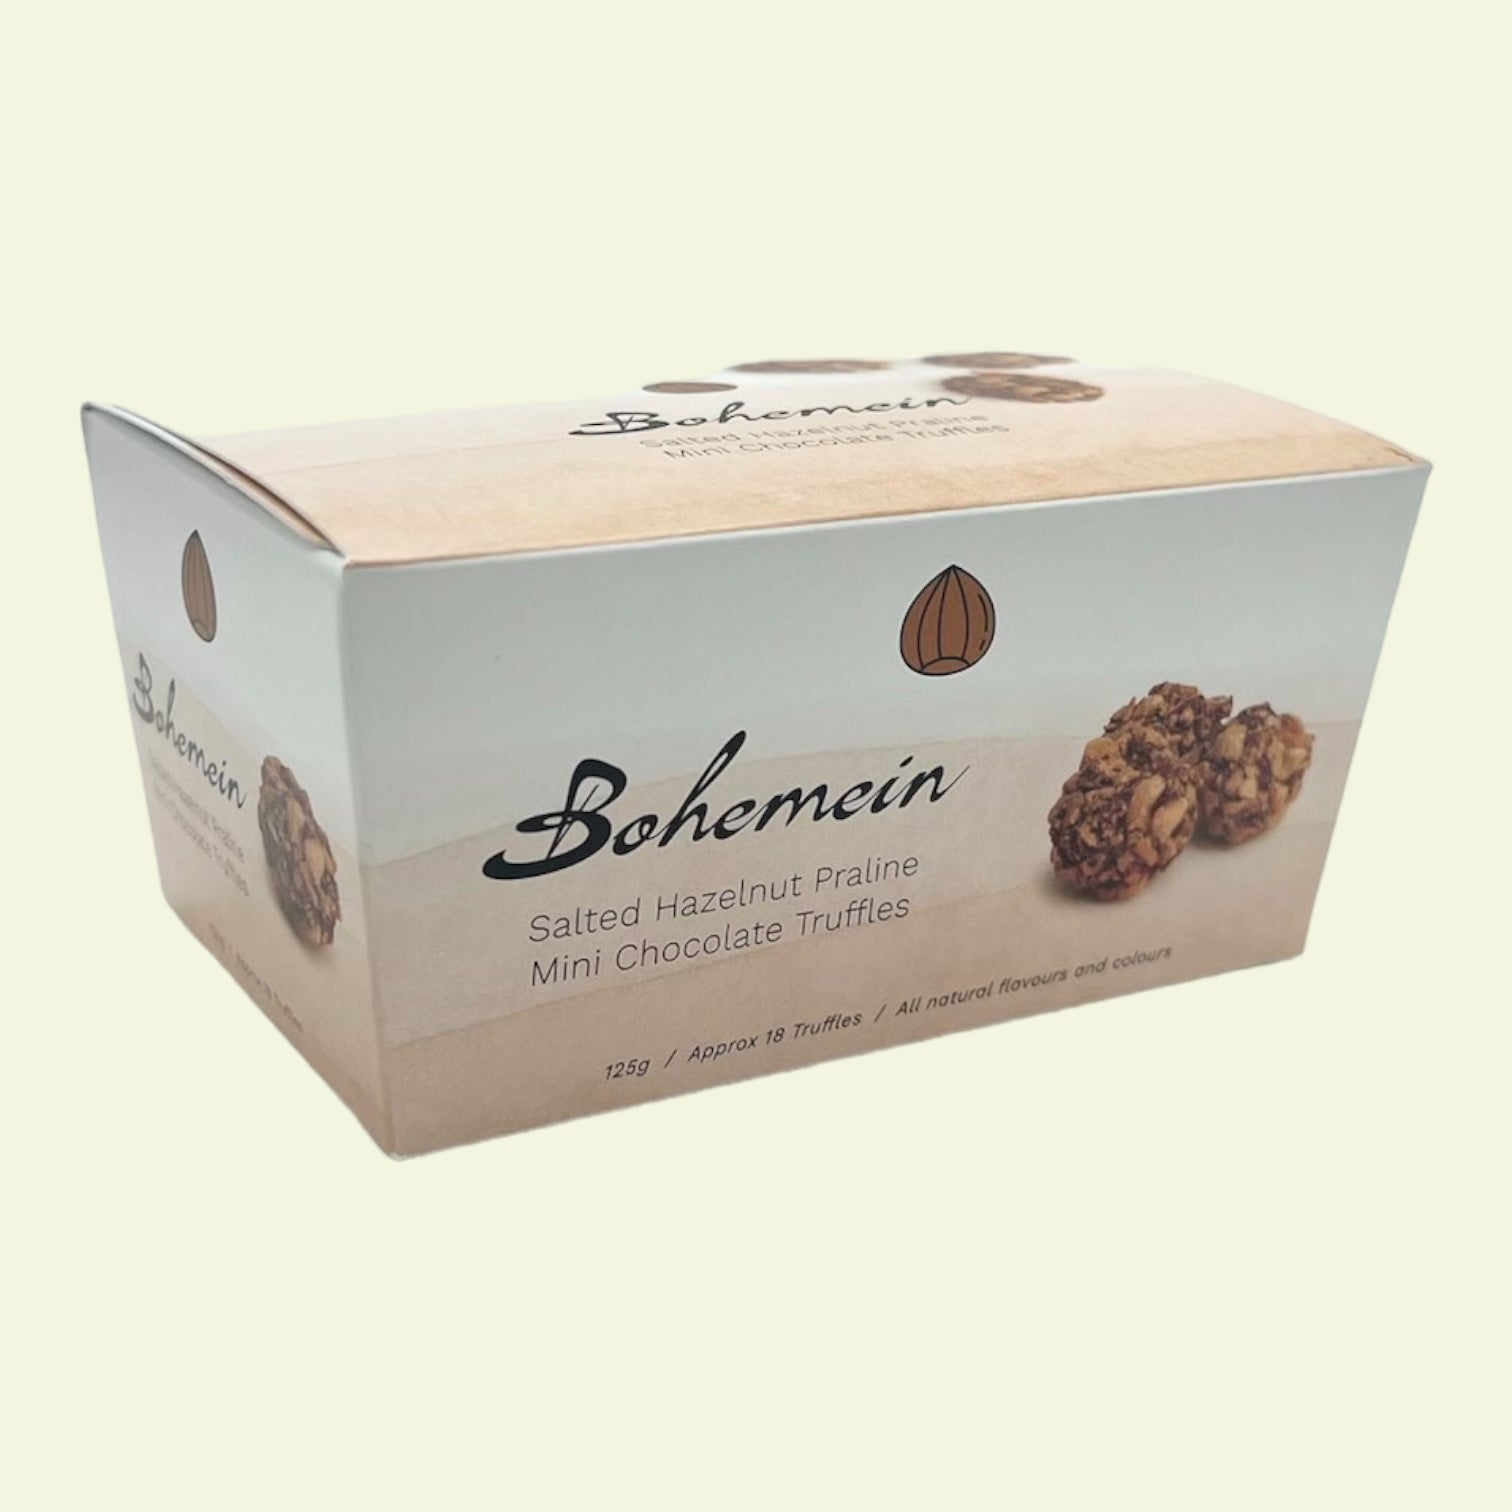 Bohemein Salted Hazelnut Chocolate Truffle Box